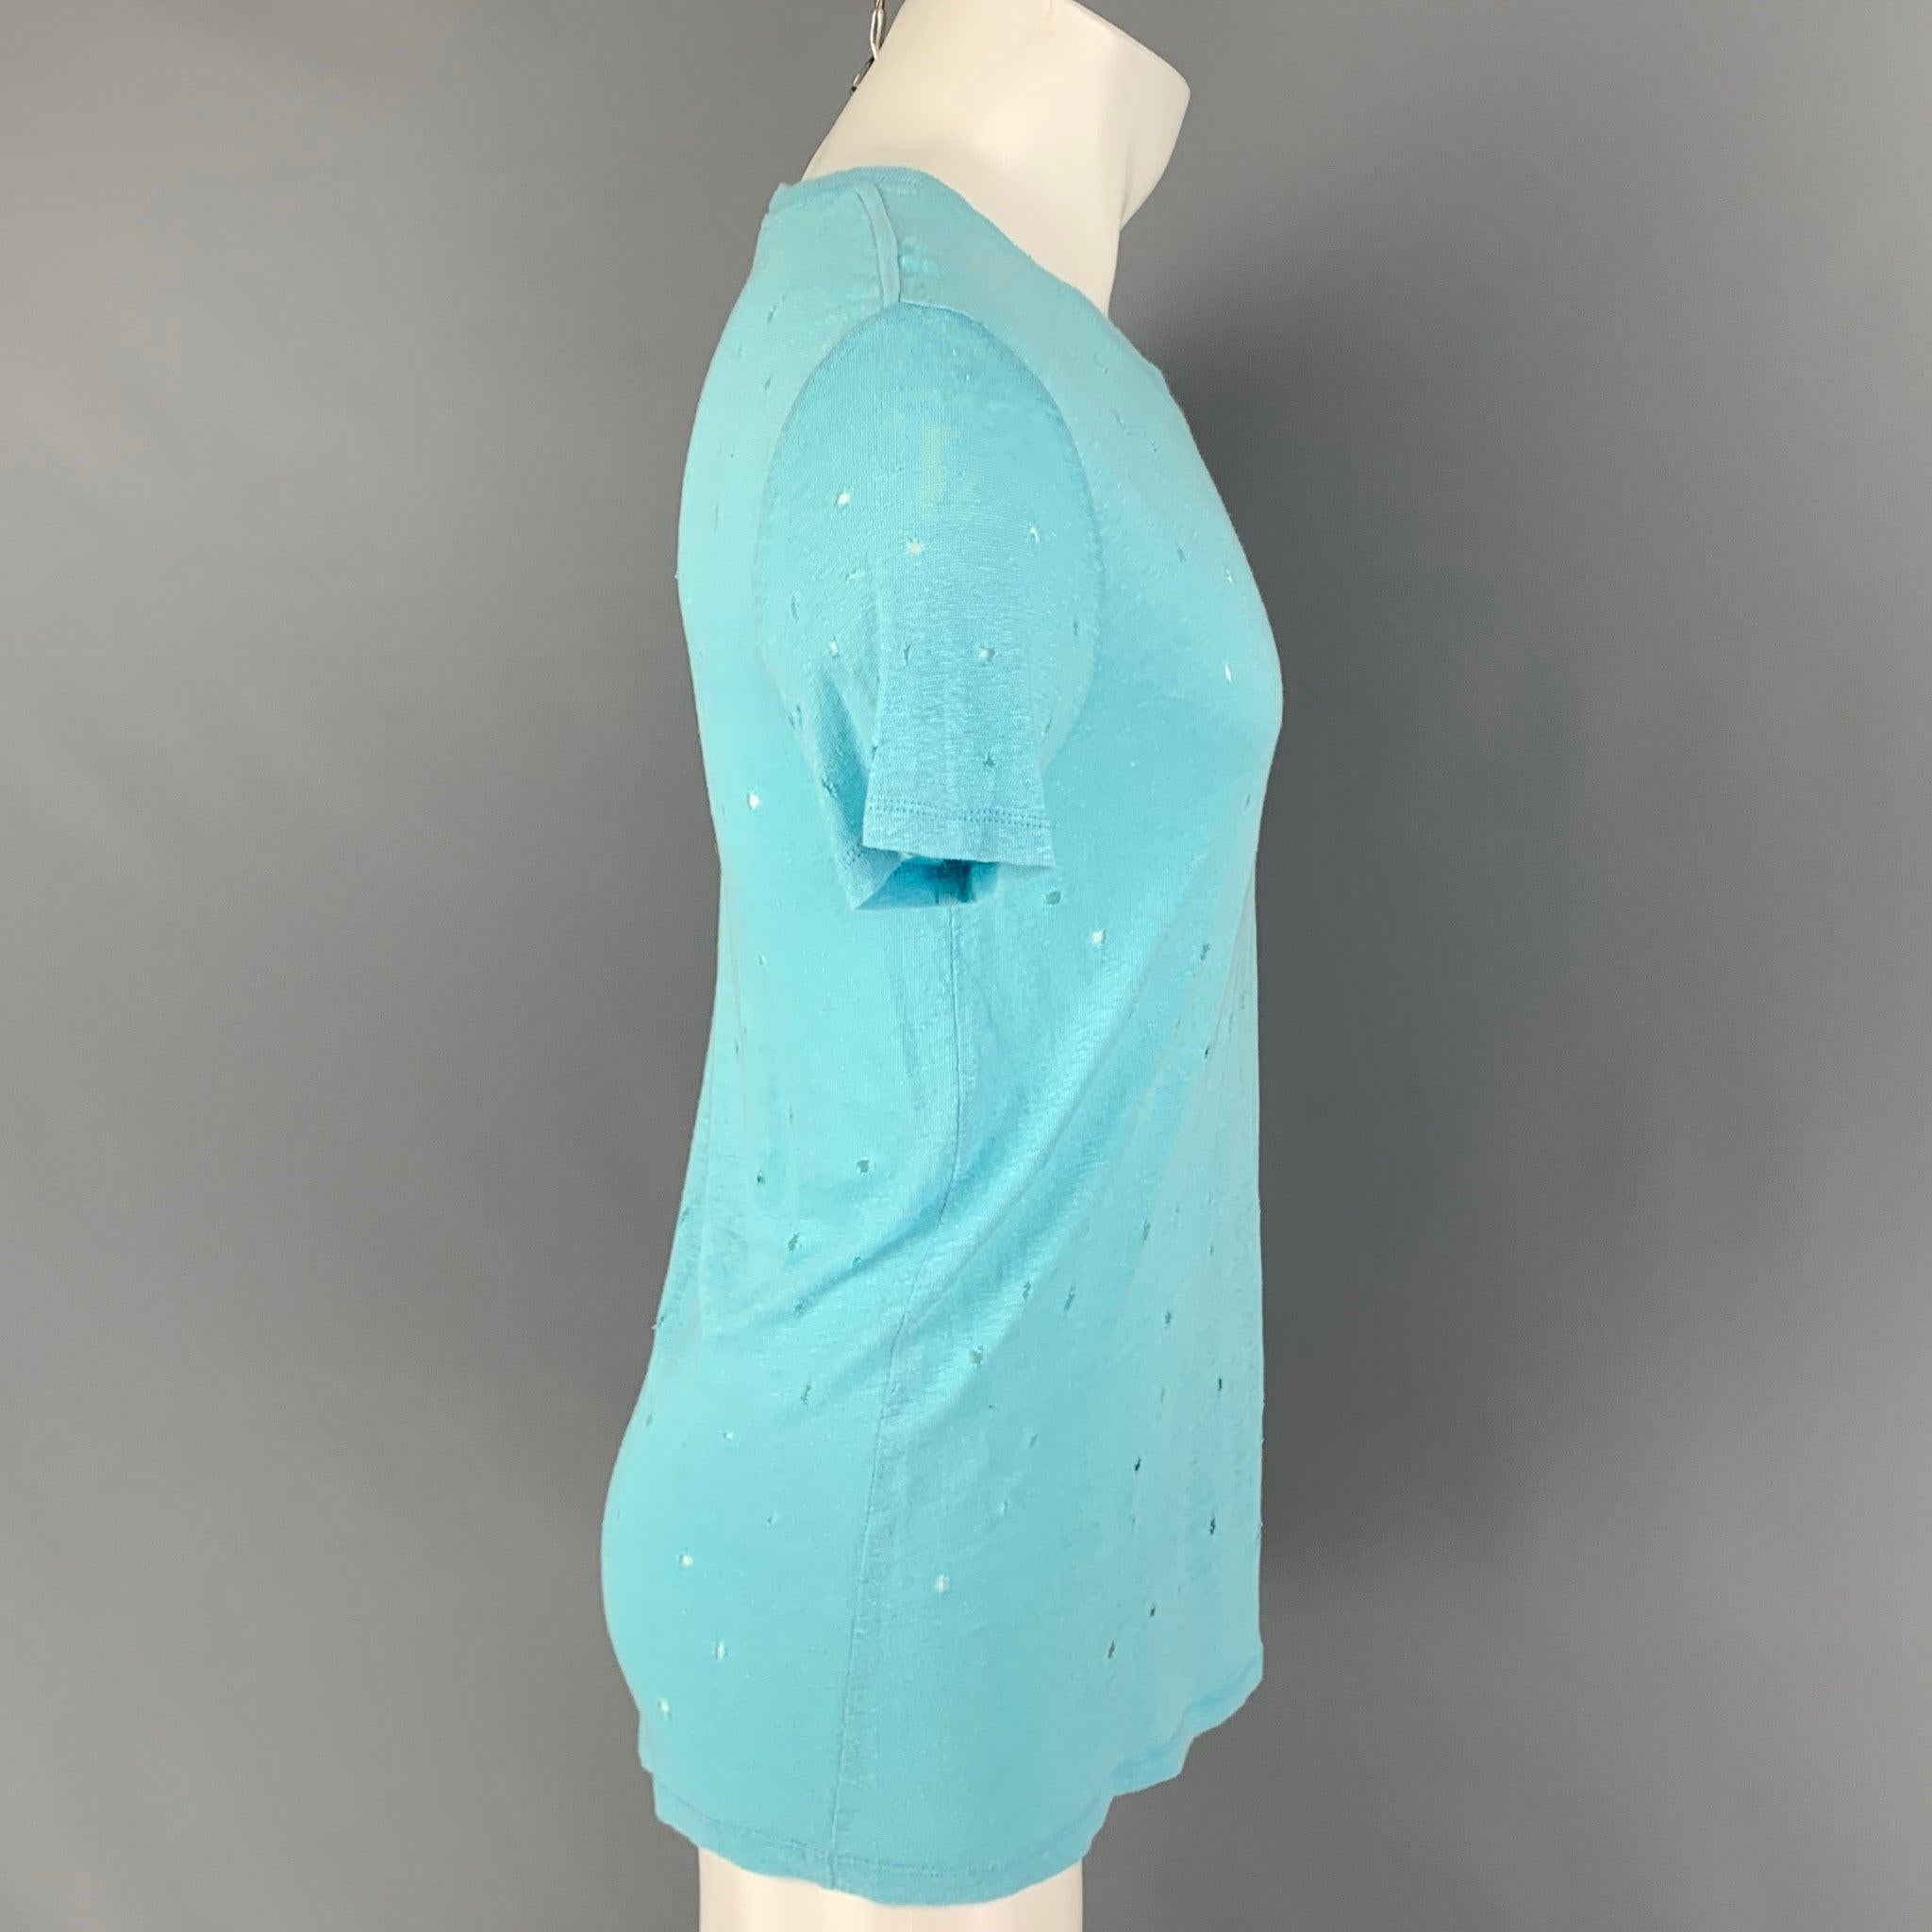 Le t-shirt 'Clay' d'Iro se présente dans un lin bleu clair avec des détails en relief et un col ras du cou. Fabriqué au Portugal.
Très bon état d'origine.  

Marqué :   S 

Mesures : 
 
Épaule : 18 pouces  Poitrine : 38 pouces  Manches : 8 pouces